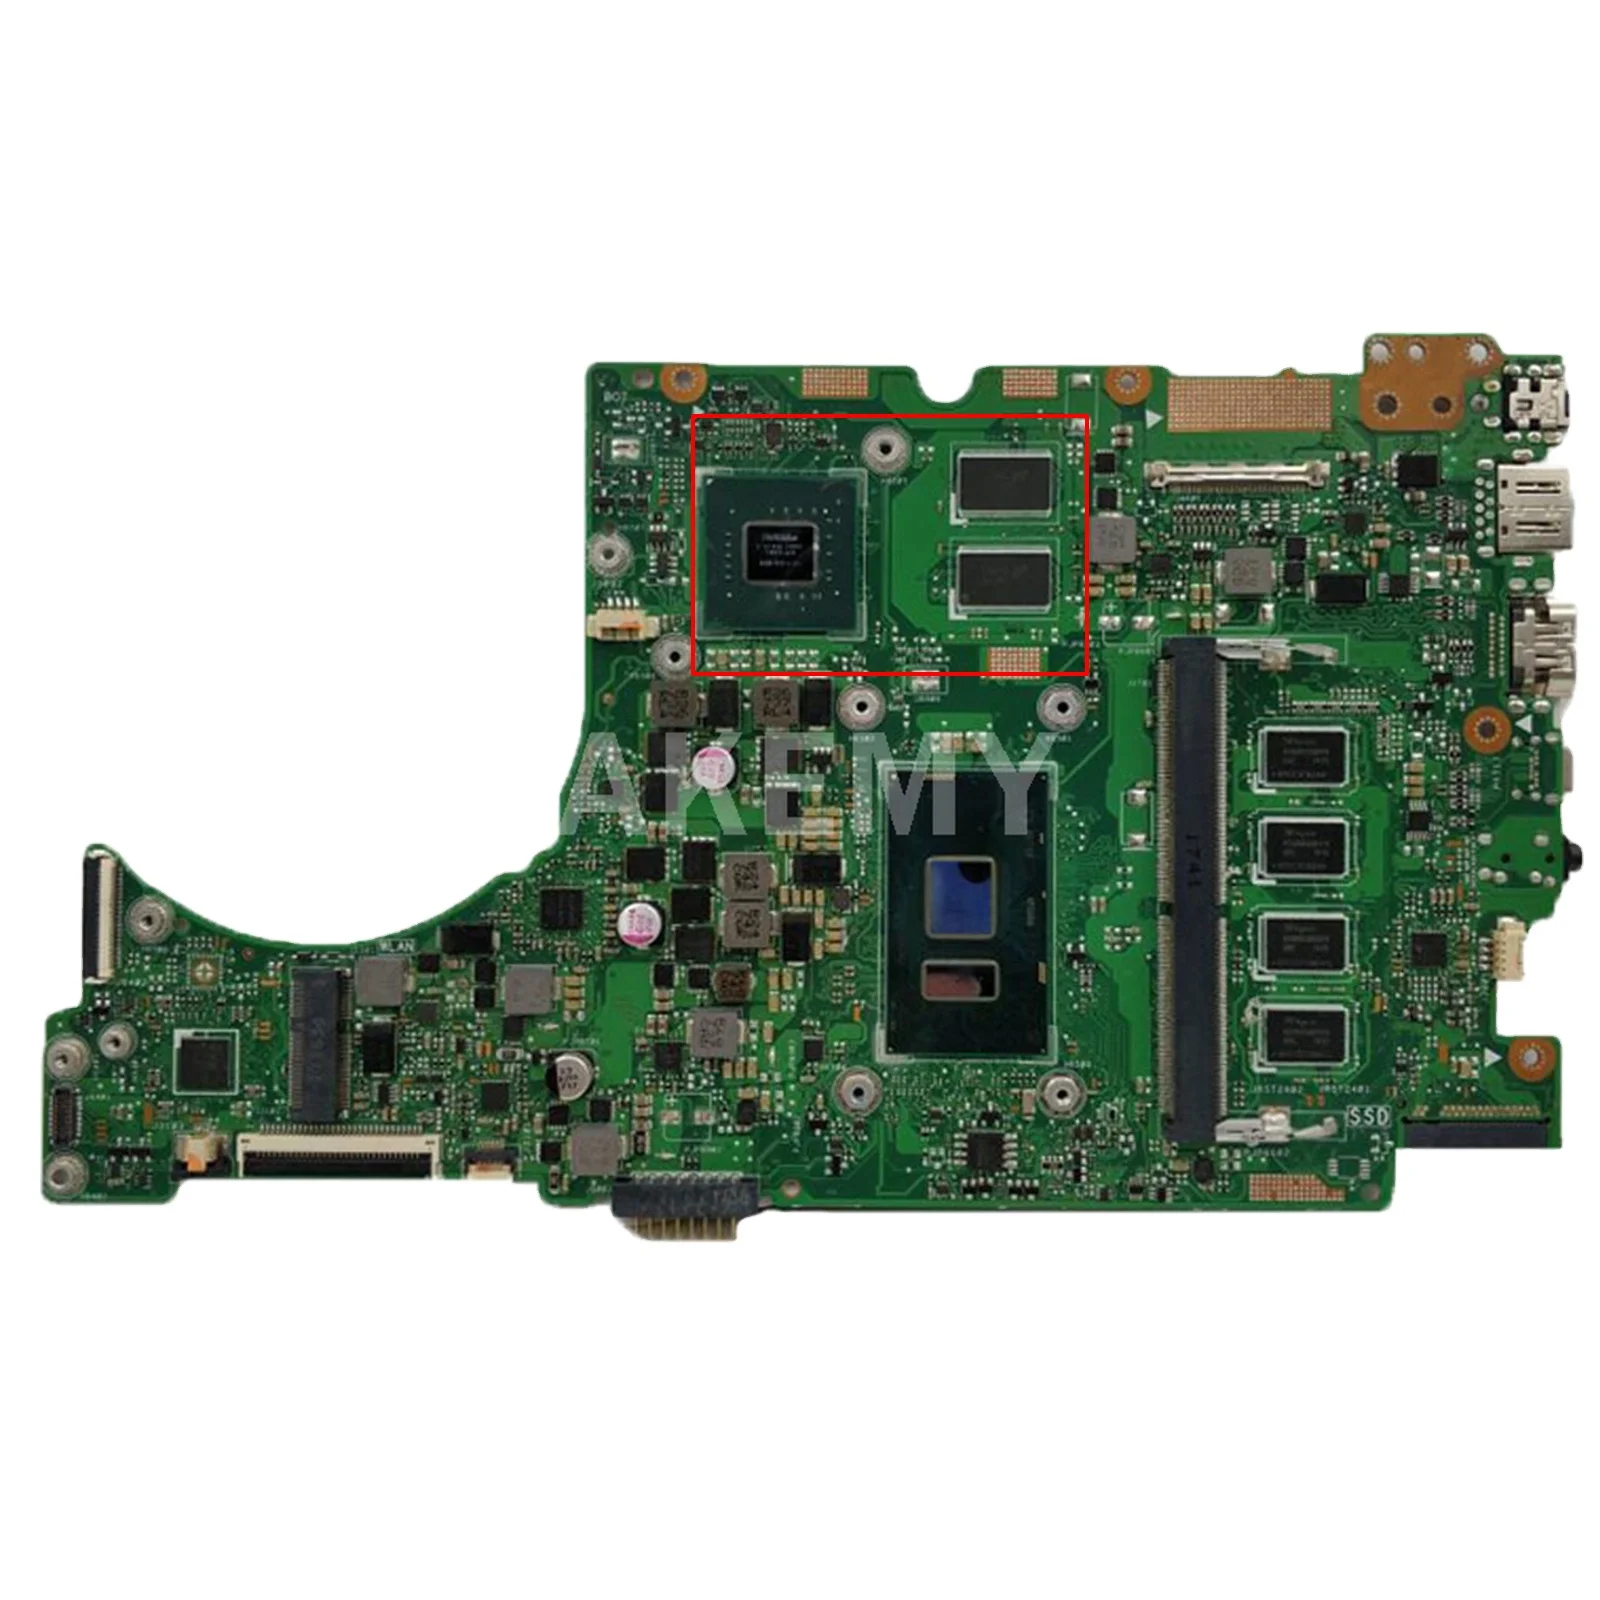 

UX410UQ Mainboard GT940MX I3 I5 I7 6th 7th Gen 4GB 8GB RAM for ASUS U4000U UX410UQK UX310UV RX410U UX410U Laptop Motherboard